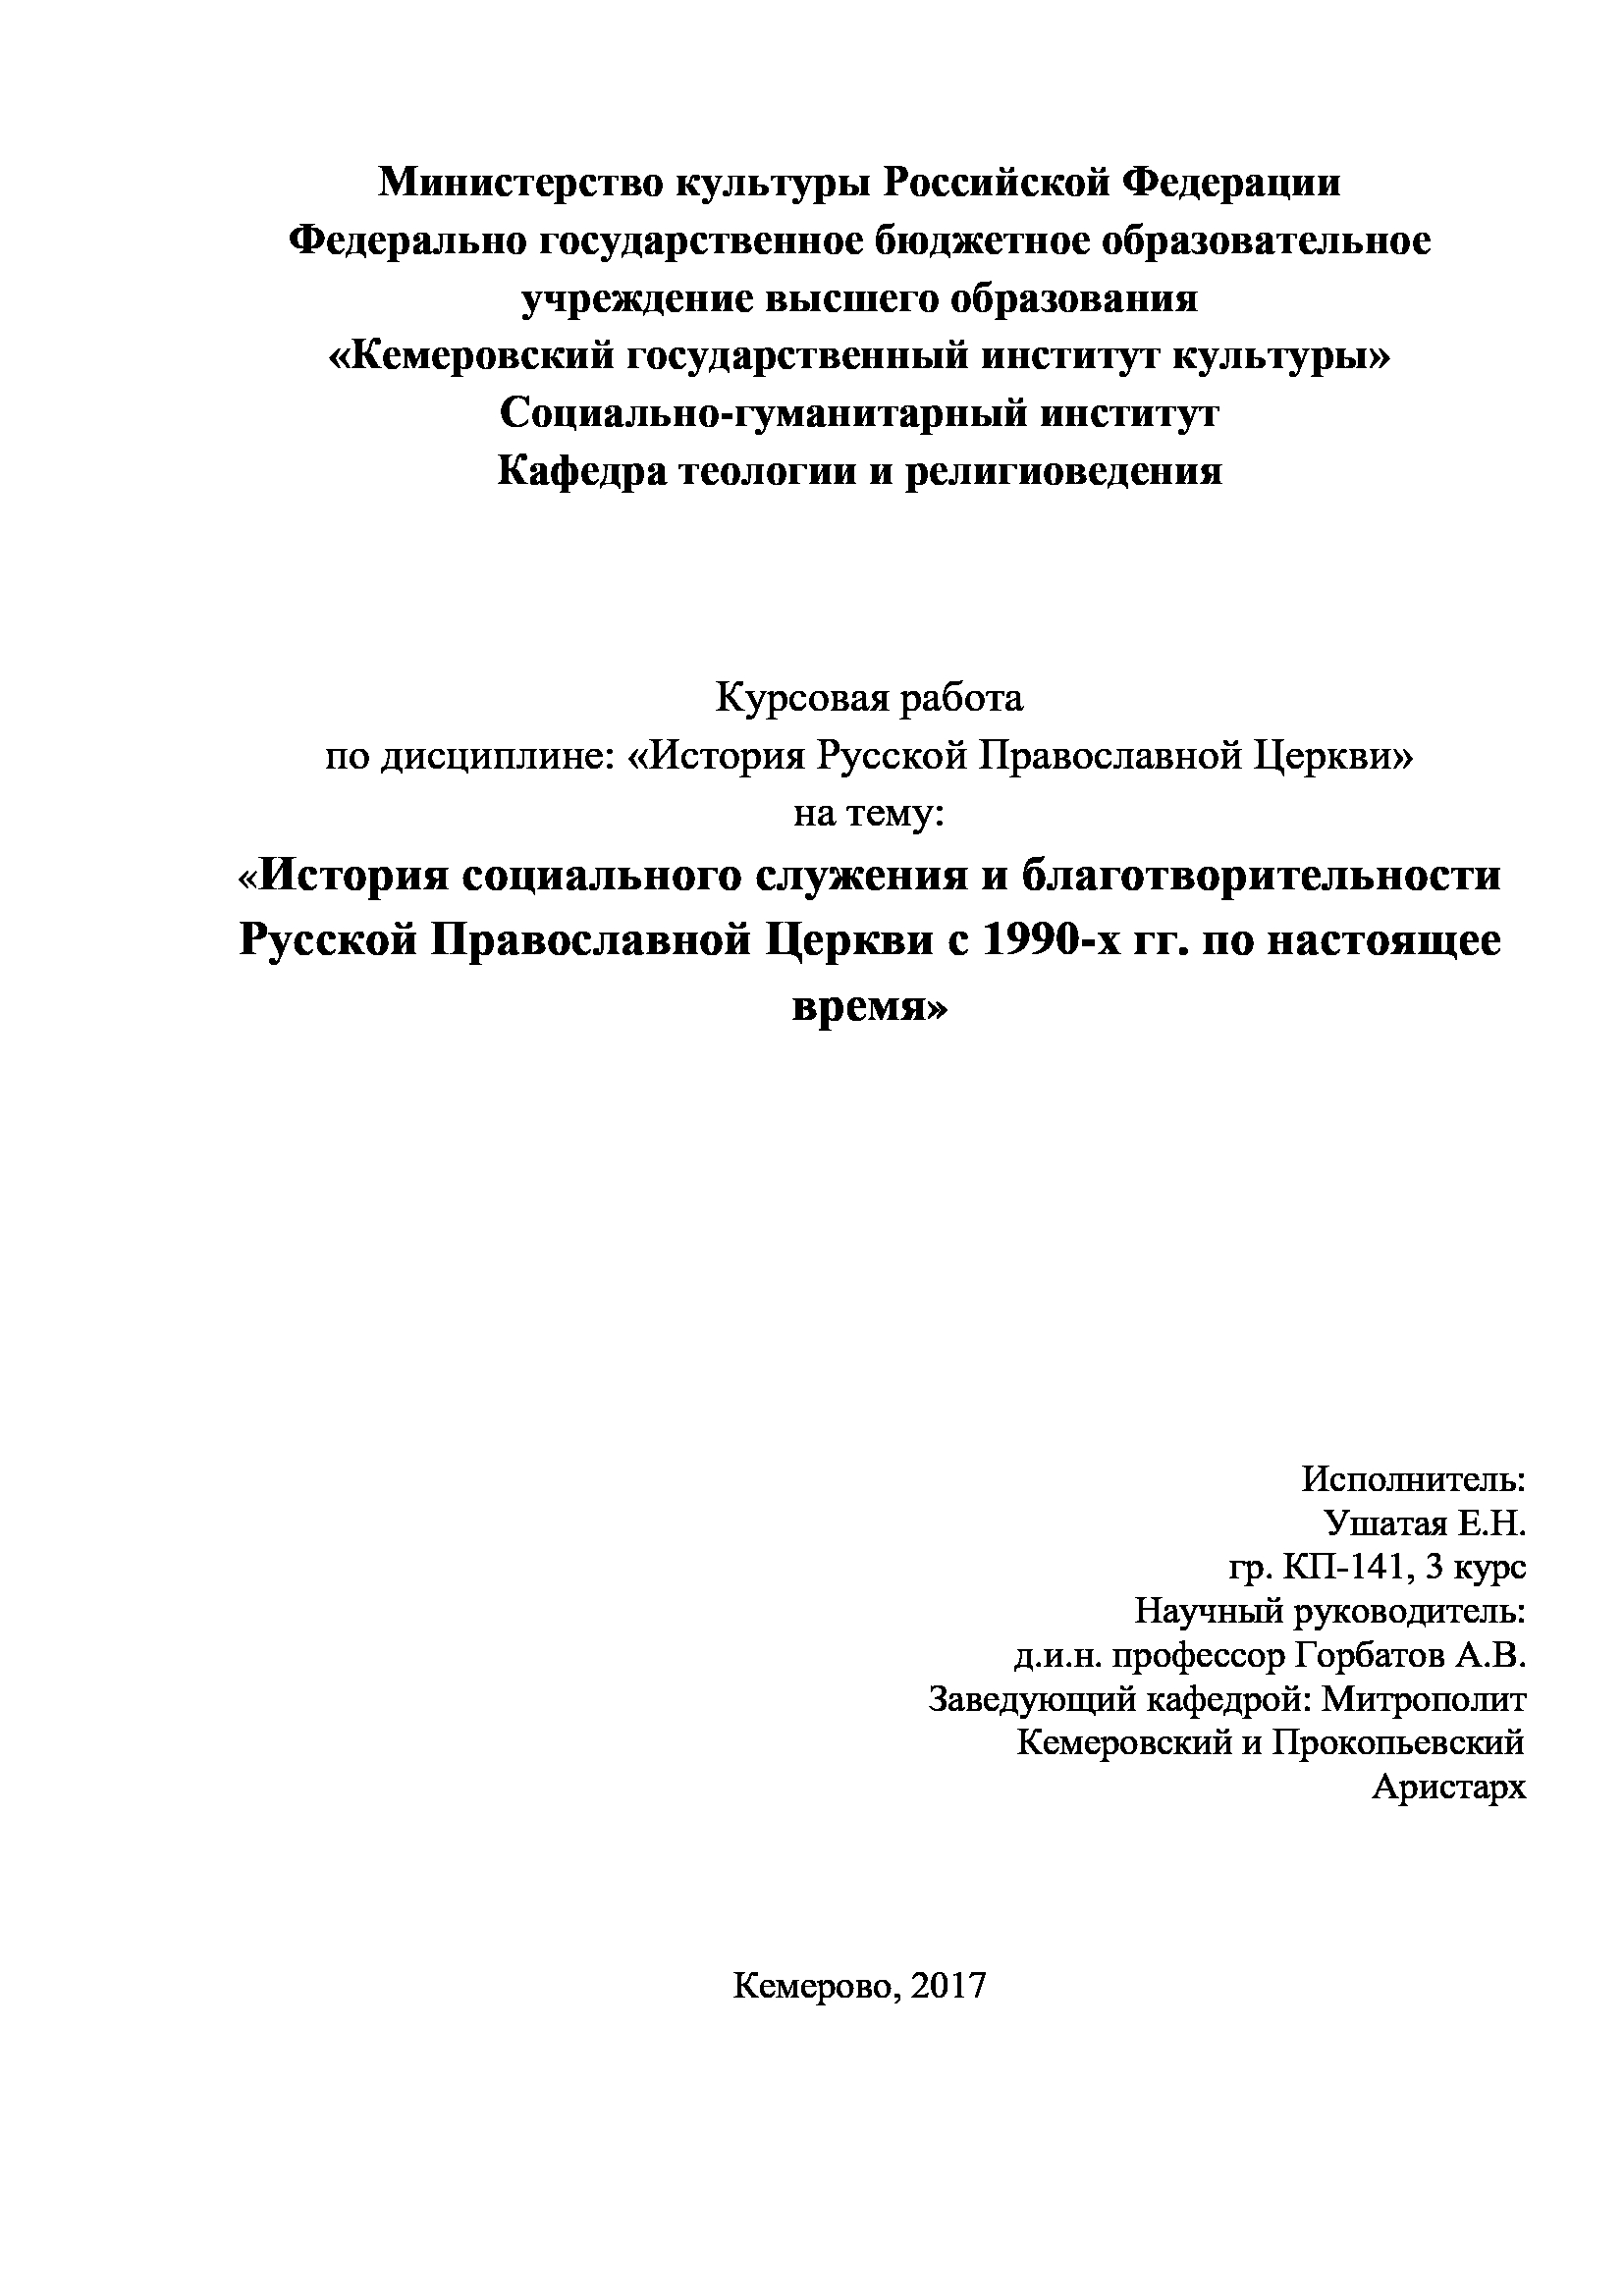 История социального служения и благотворительности Русской Православной Церкви с 1990-х гг. по настоящее время